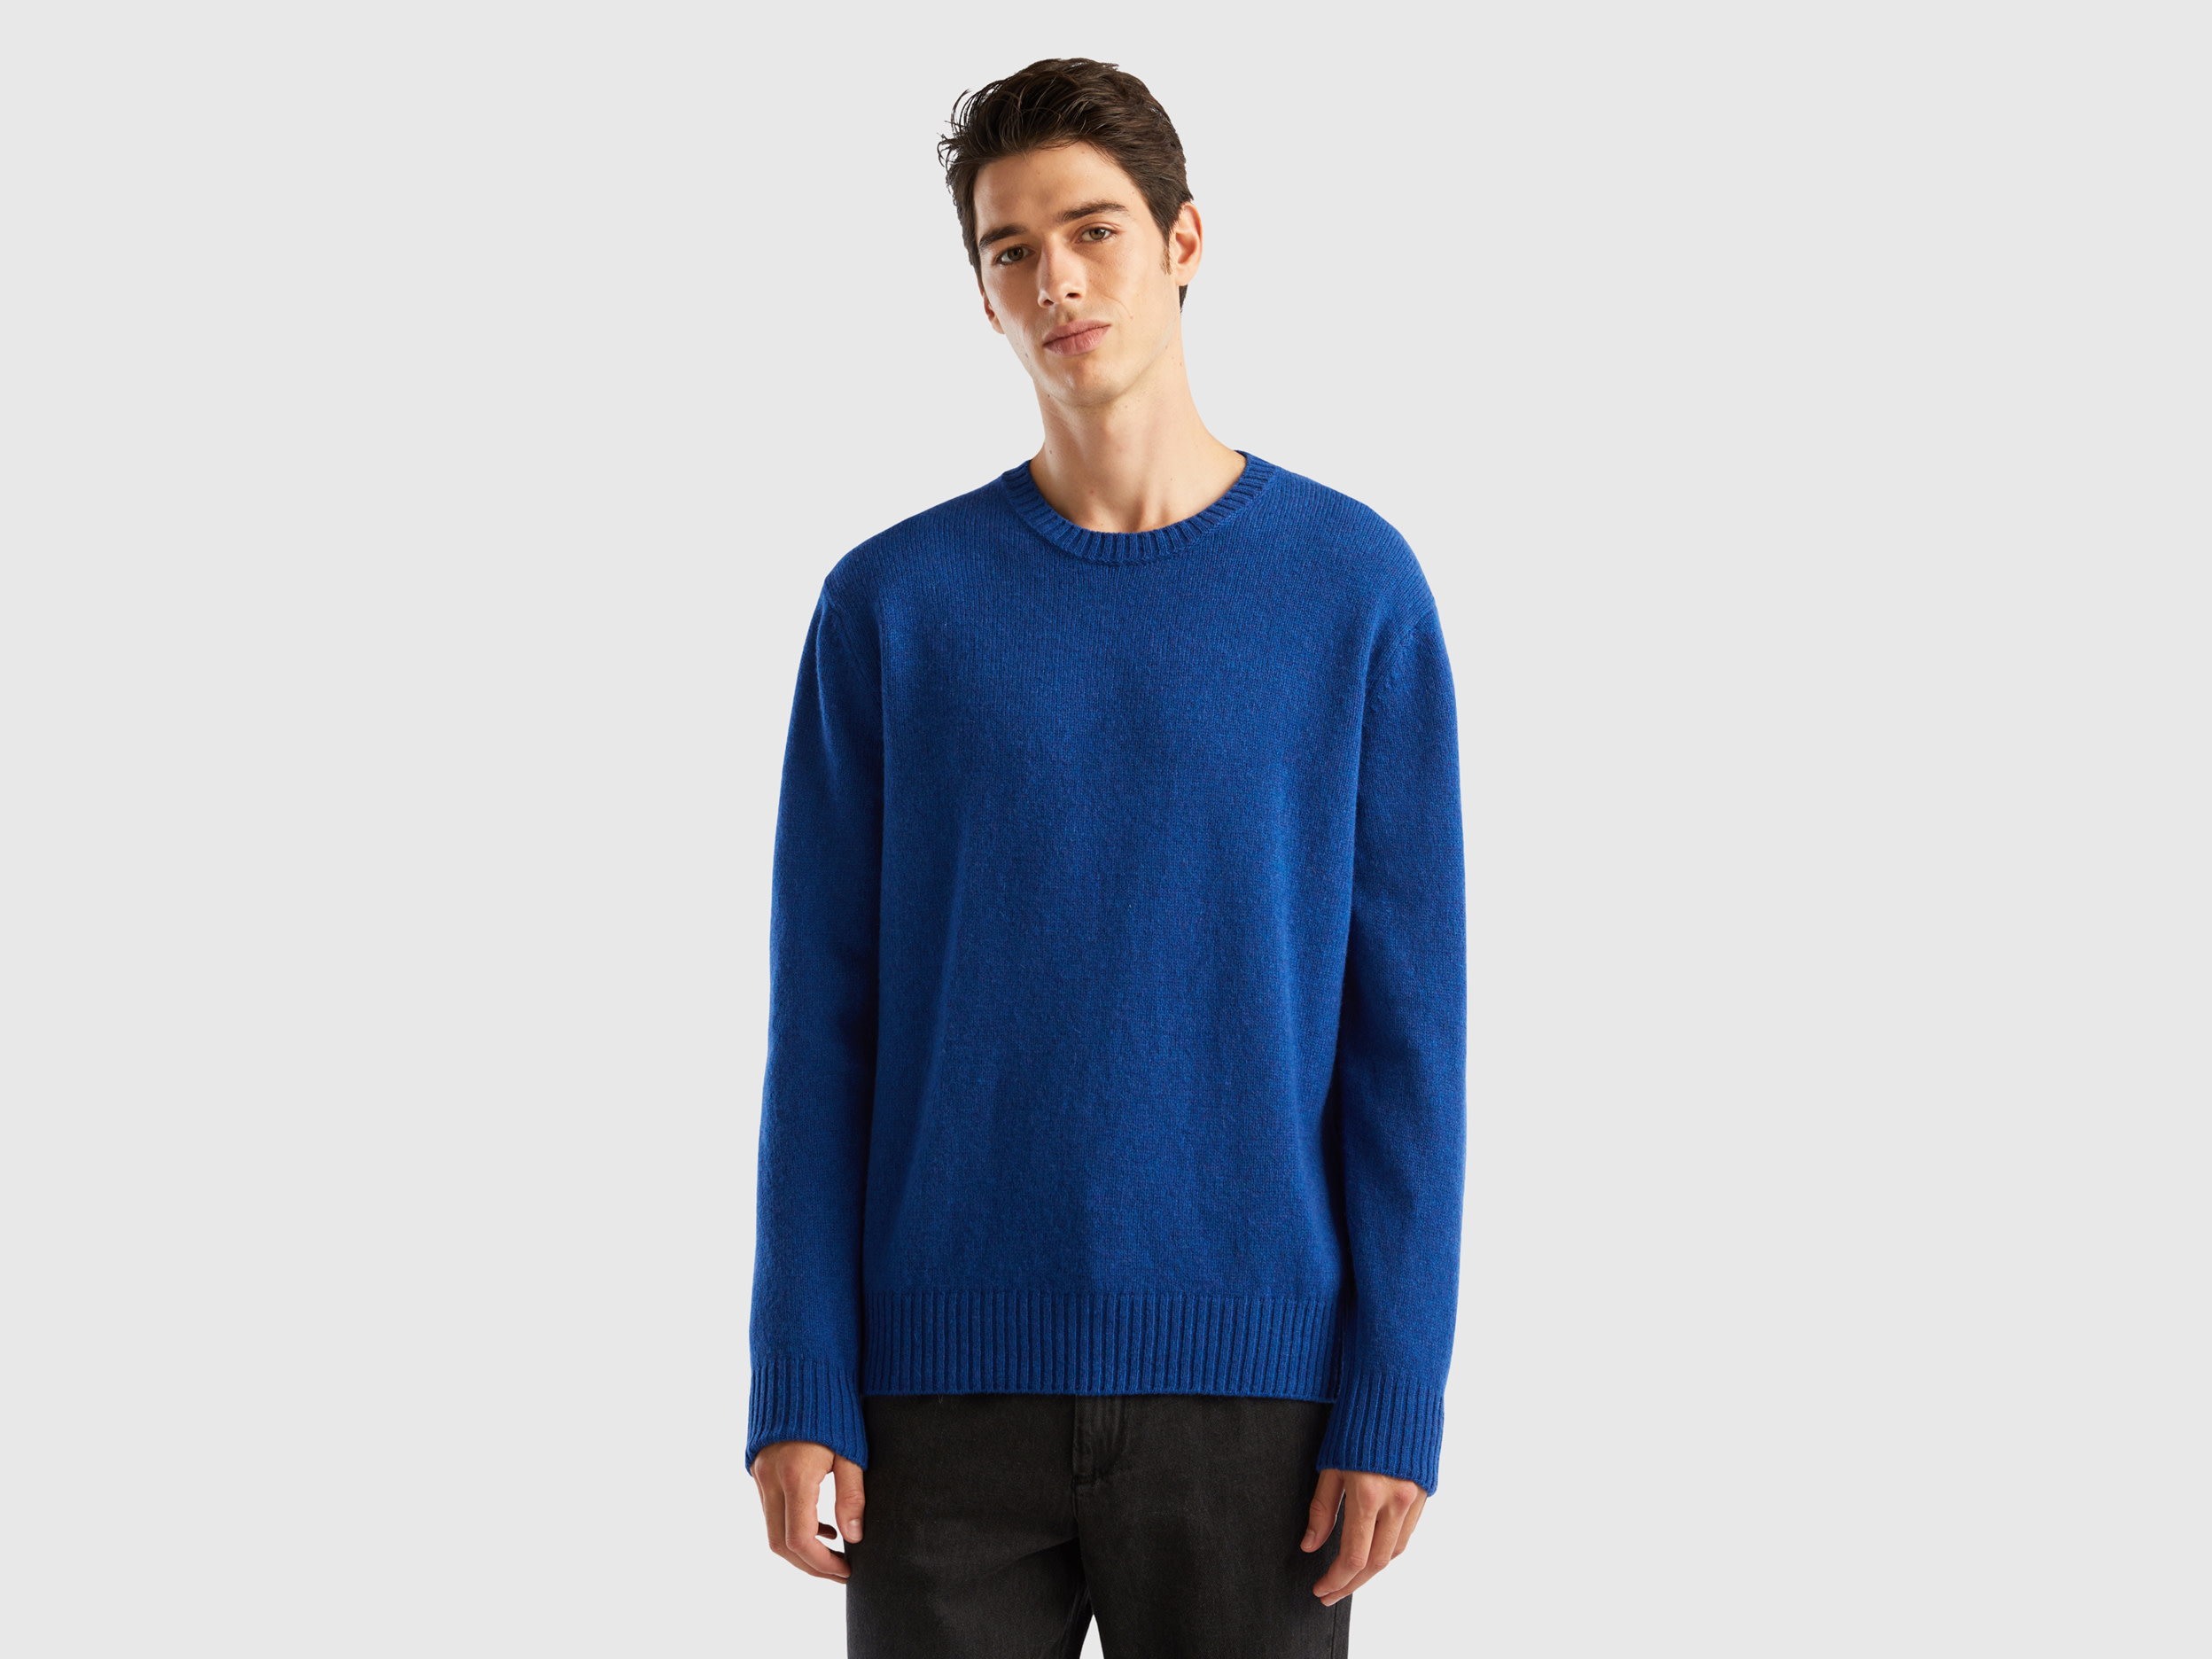 Benetton, Sweater In Shetland Wool, size XL, Bright Blue, Men